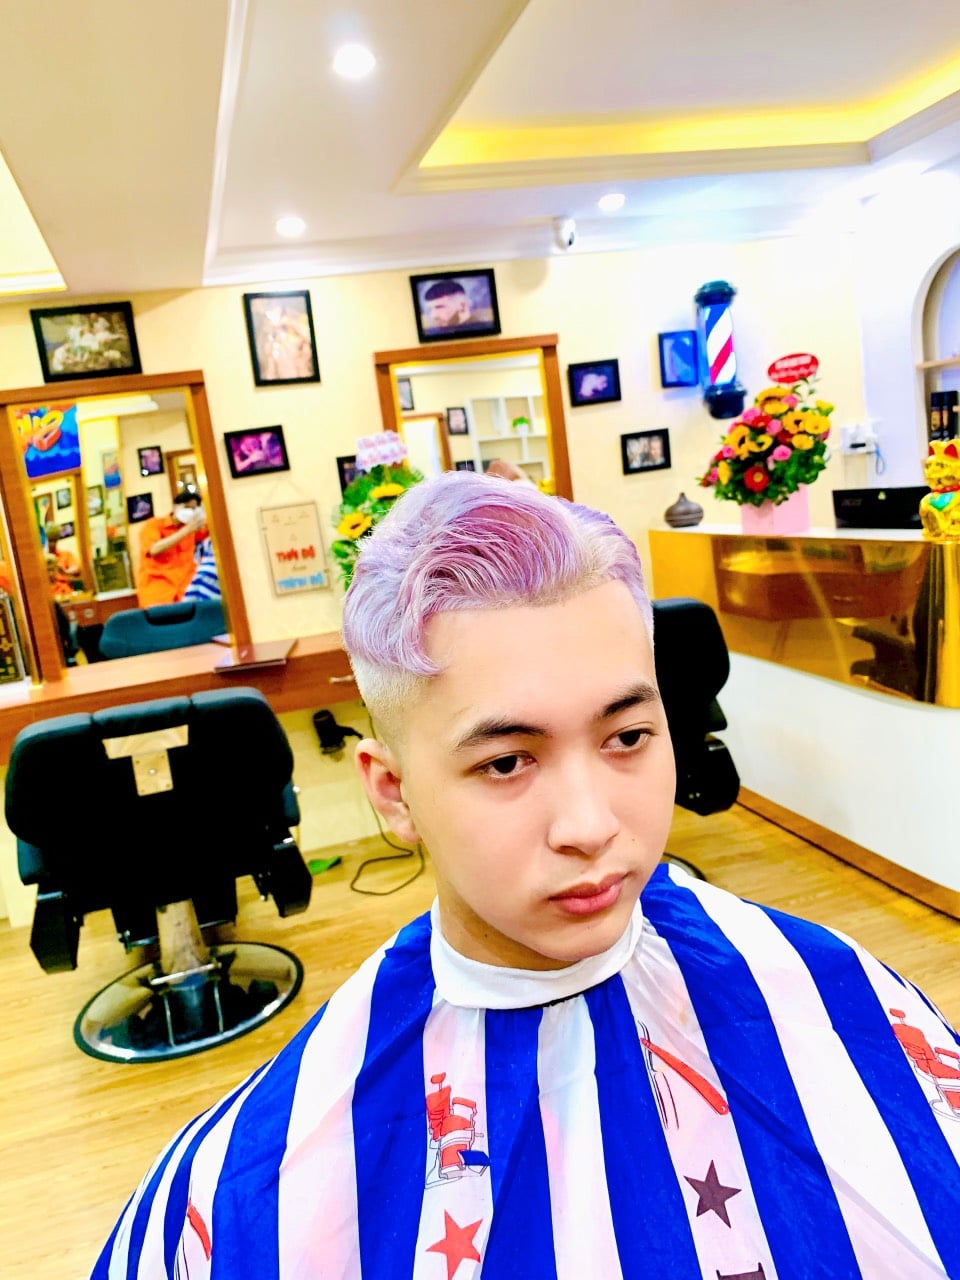 Top 5 Tiệm cắt tóc nam đẹp và chất lượng nhất TP Cao Lãnh Đồng Tháp   AllTopvn